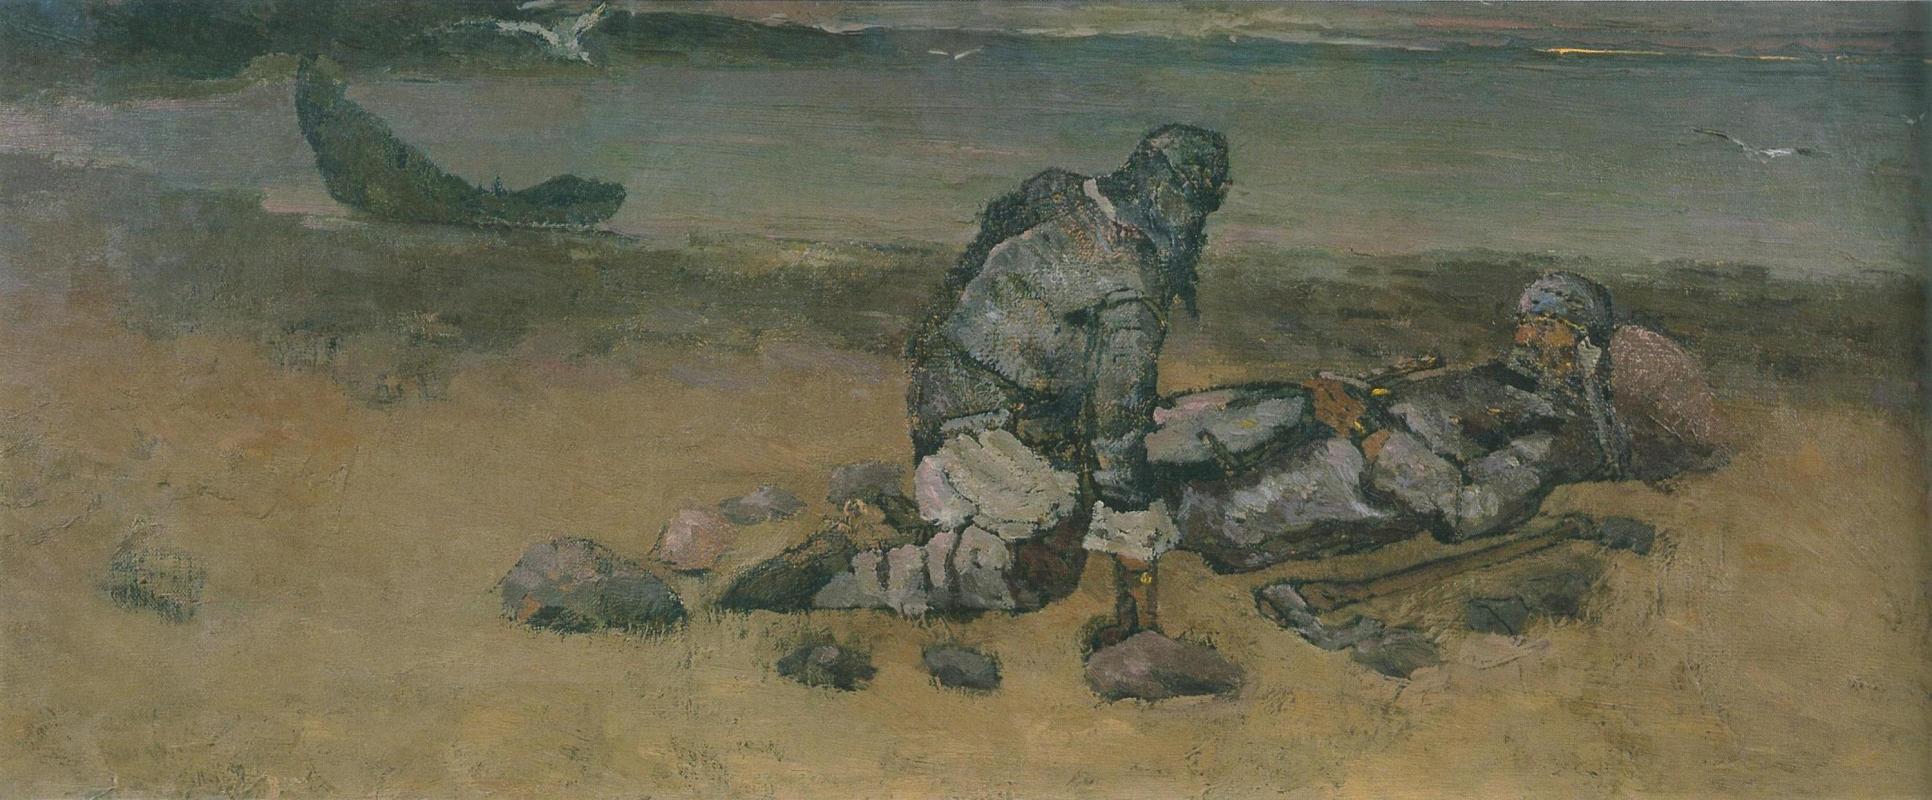 Н.К.Рерих. На чужом берегу. 1897